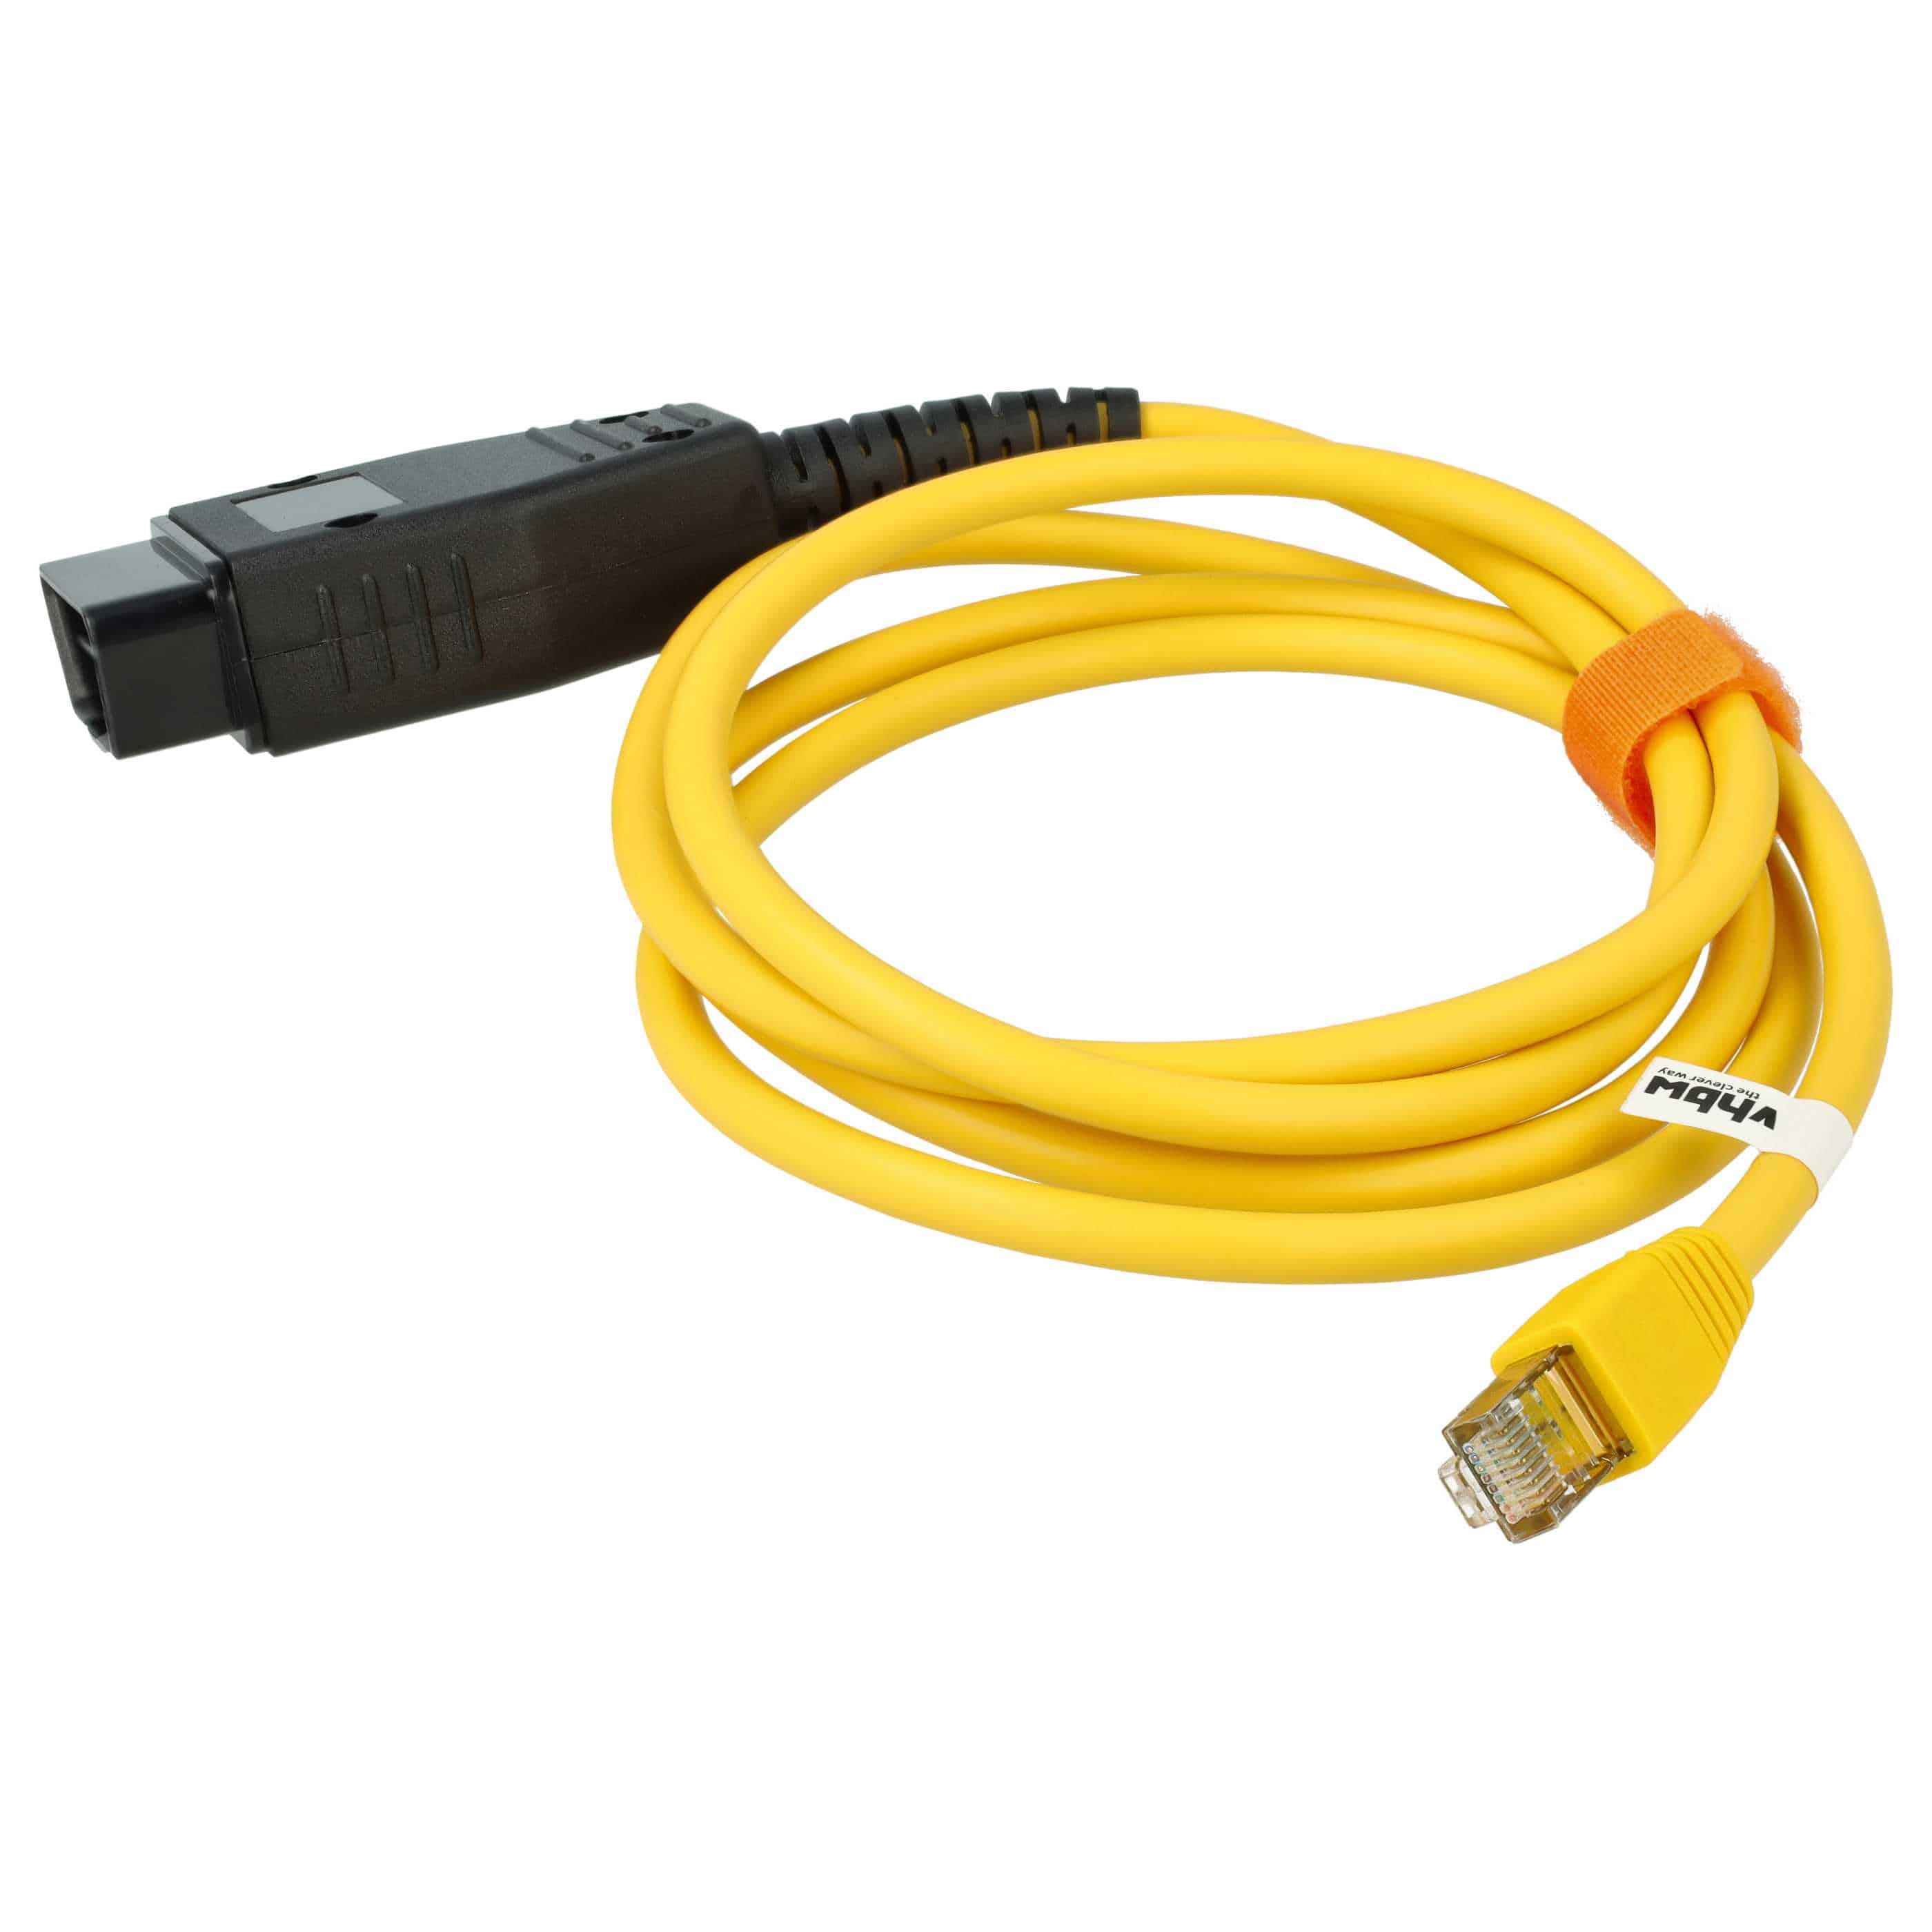 OBD Adapter als Ersatz für 61136901311, 61128380691 für BMW Fahrzeug / Diagnosegeräte - OBD1 Kabel, 180 cm